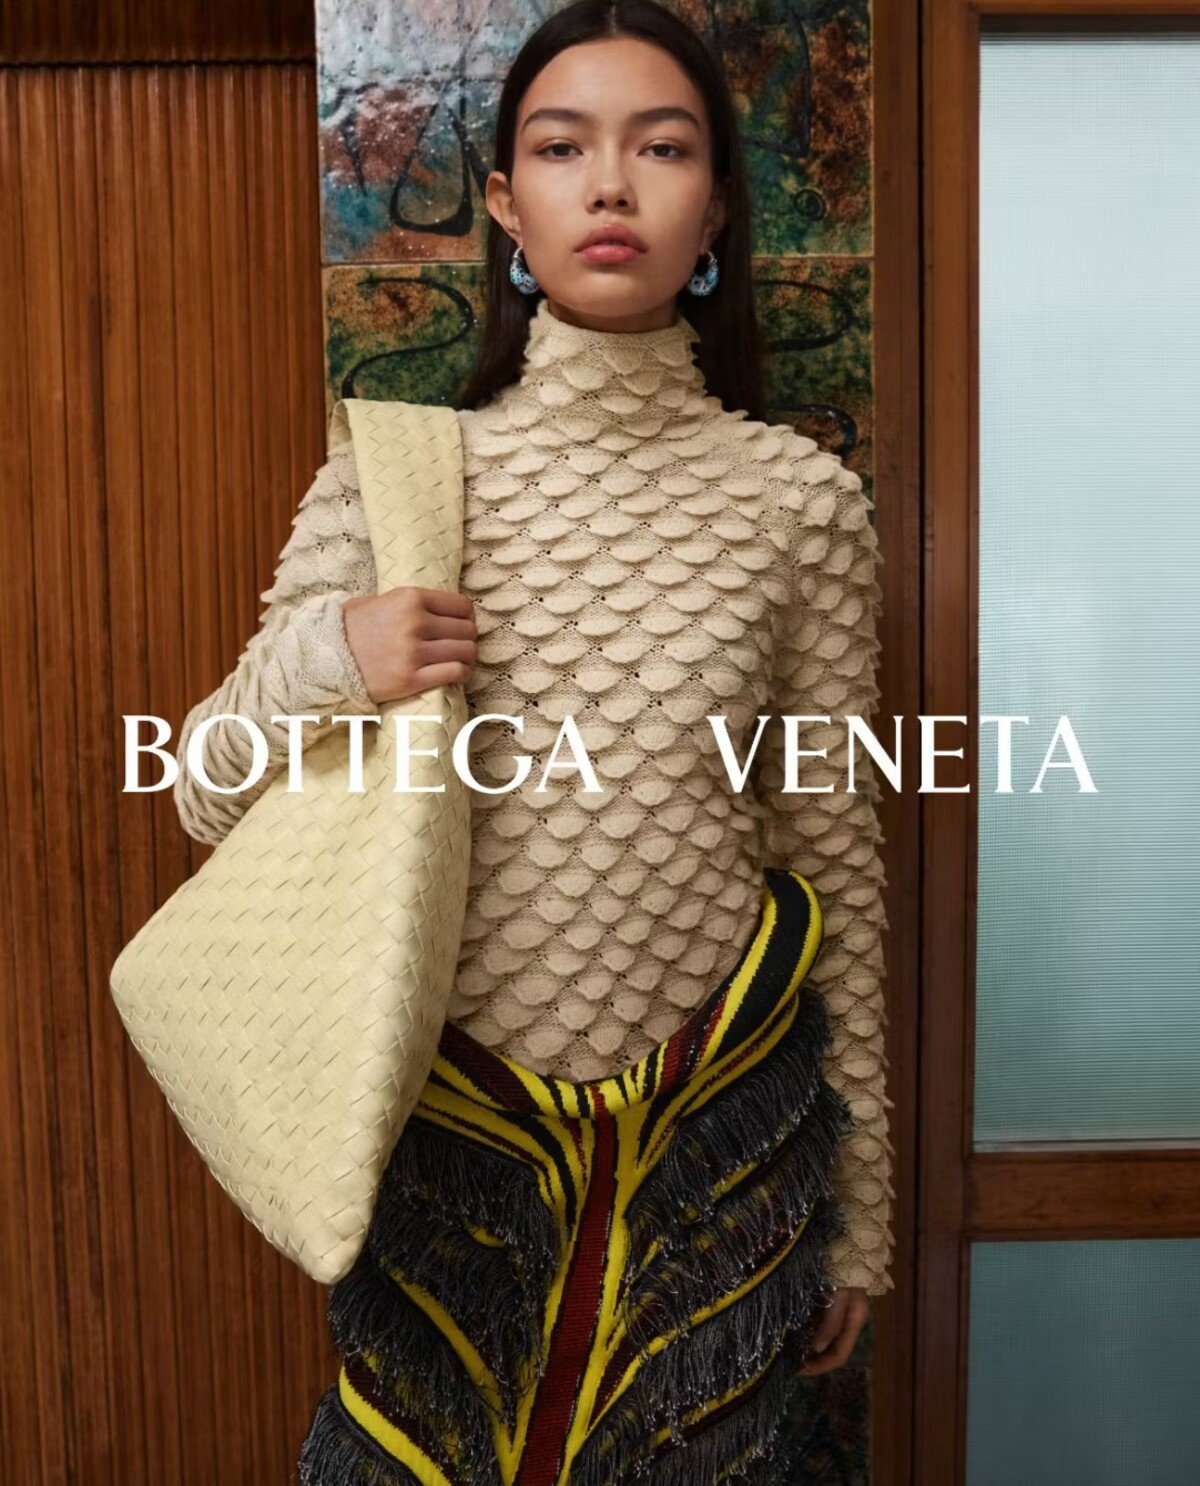 Bottega Veneta stavia na tradičnom rukopise aj experimente. Jej novinku, ktorá je inšpirovaná začiatkom milénia, budeš milovať.